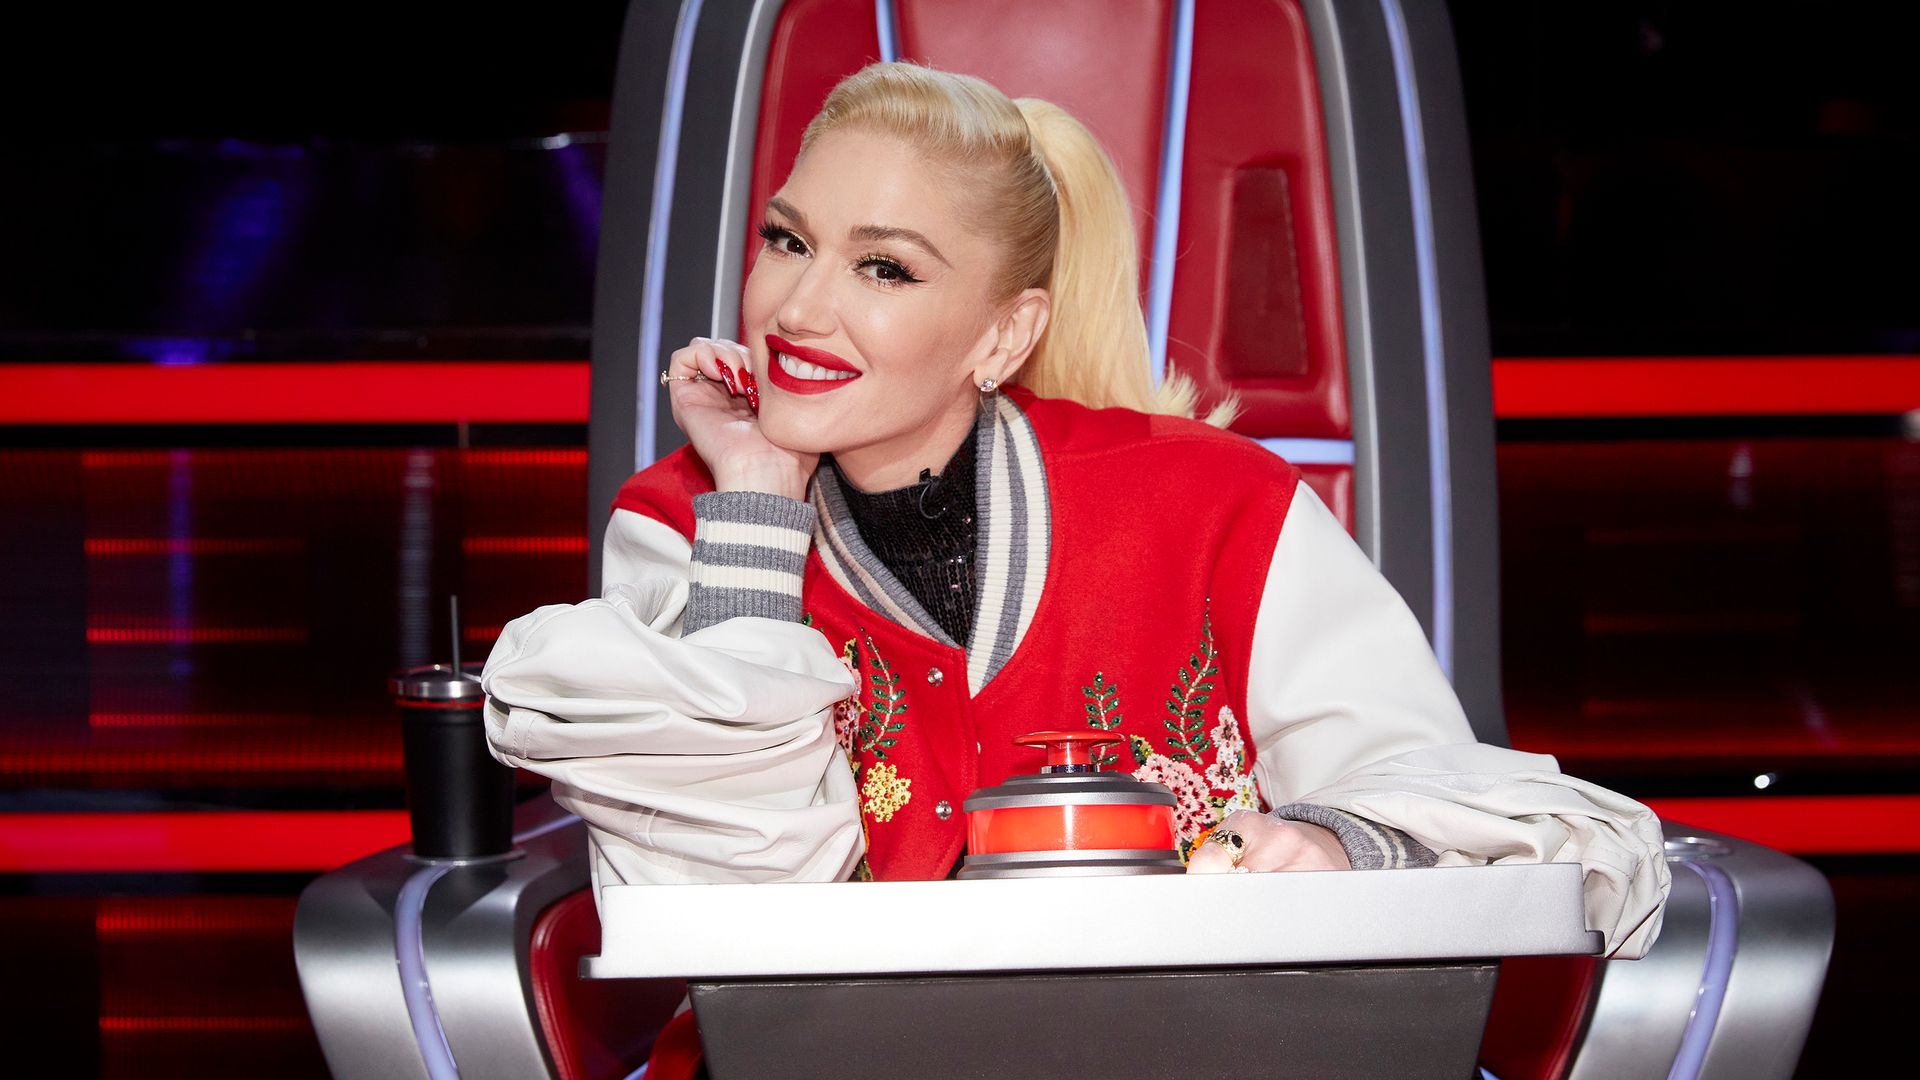 Gwen Stefani on The Voice Season 19